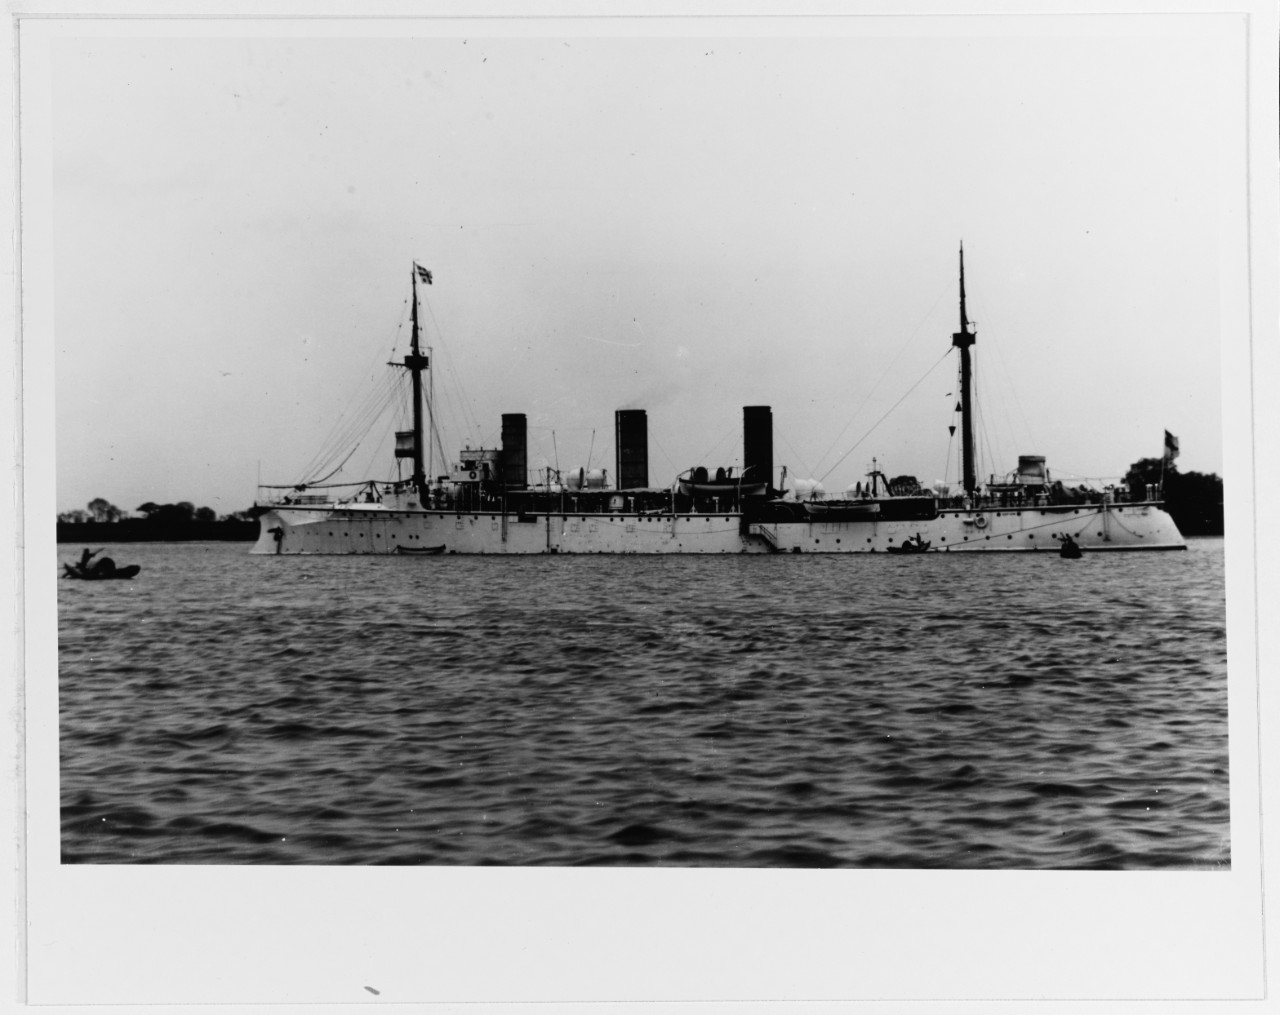 GEFION (German cruiser, 1893-1919)